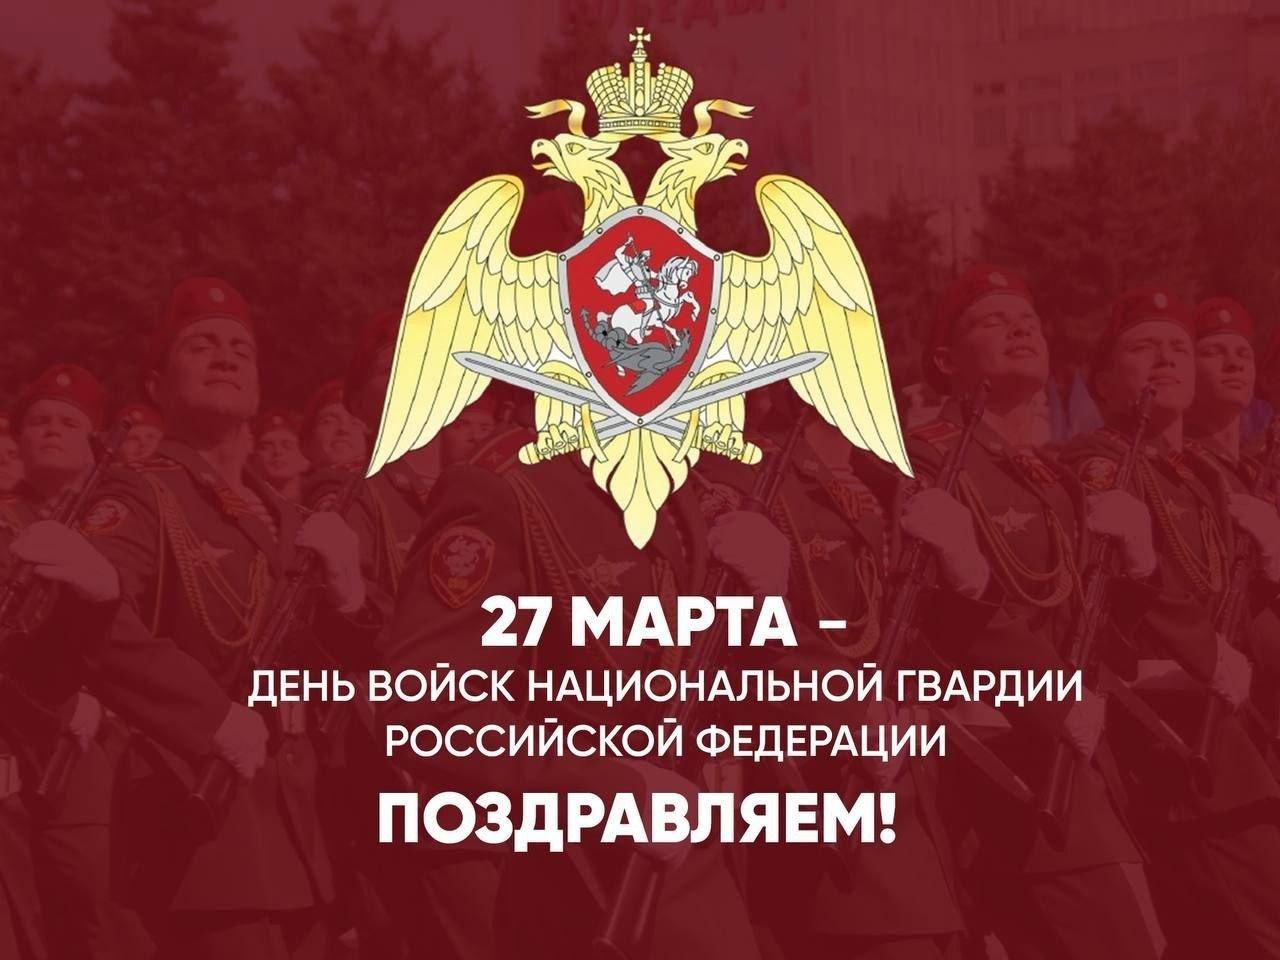 Поздравляем с днём войск национальной гвардии России.